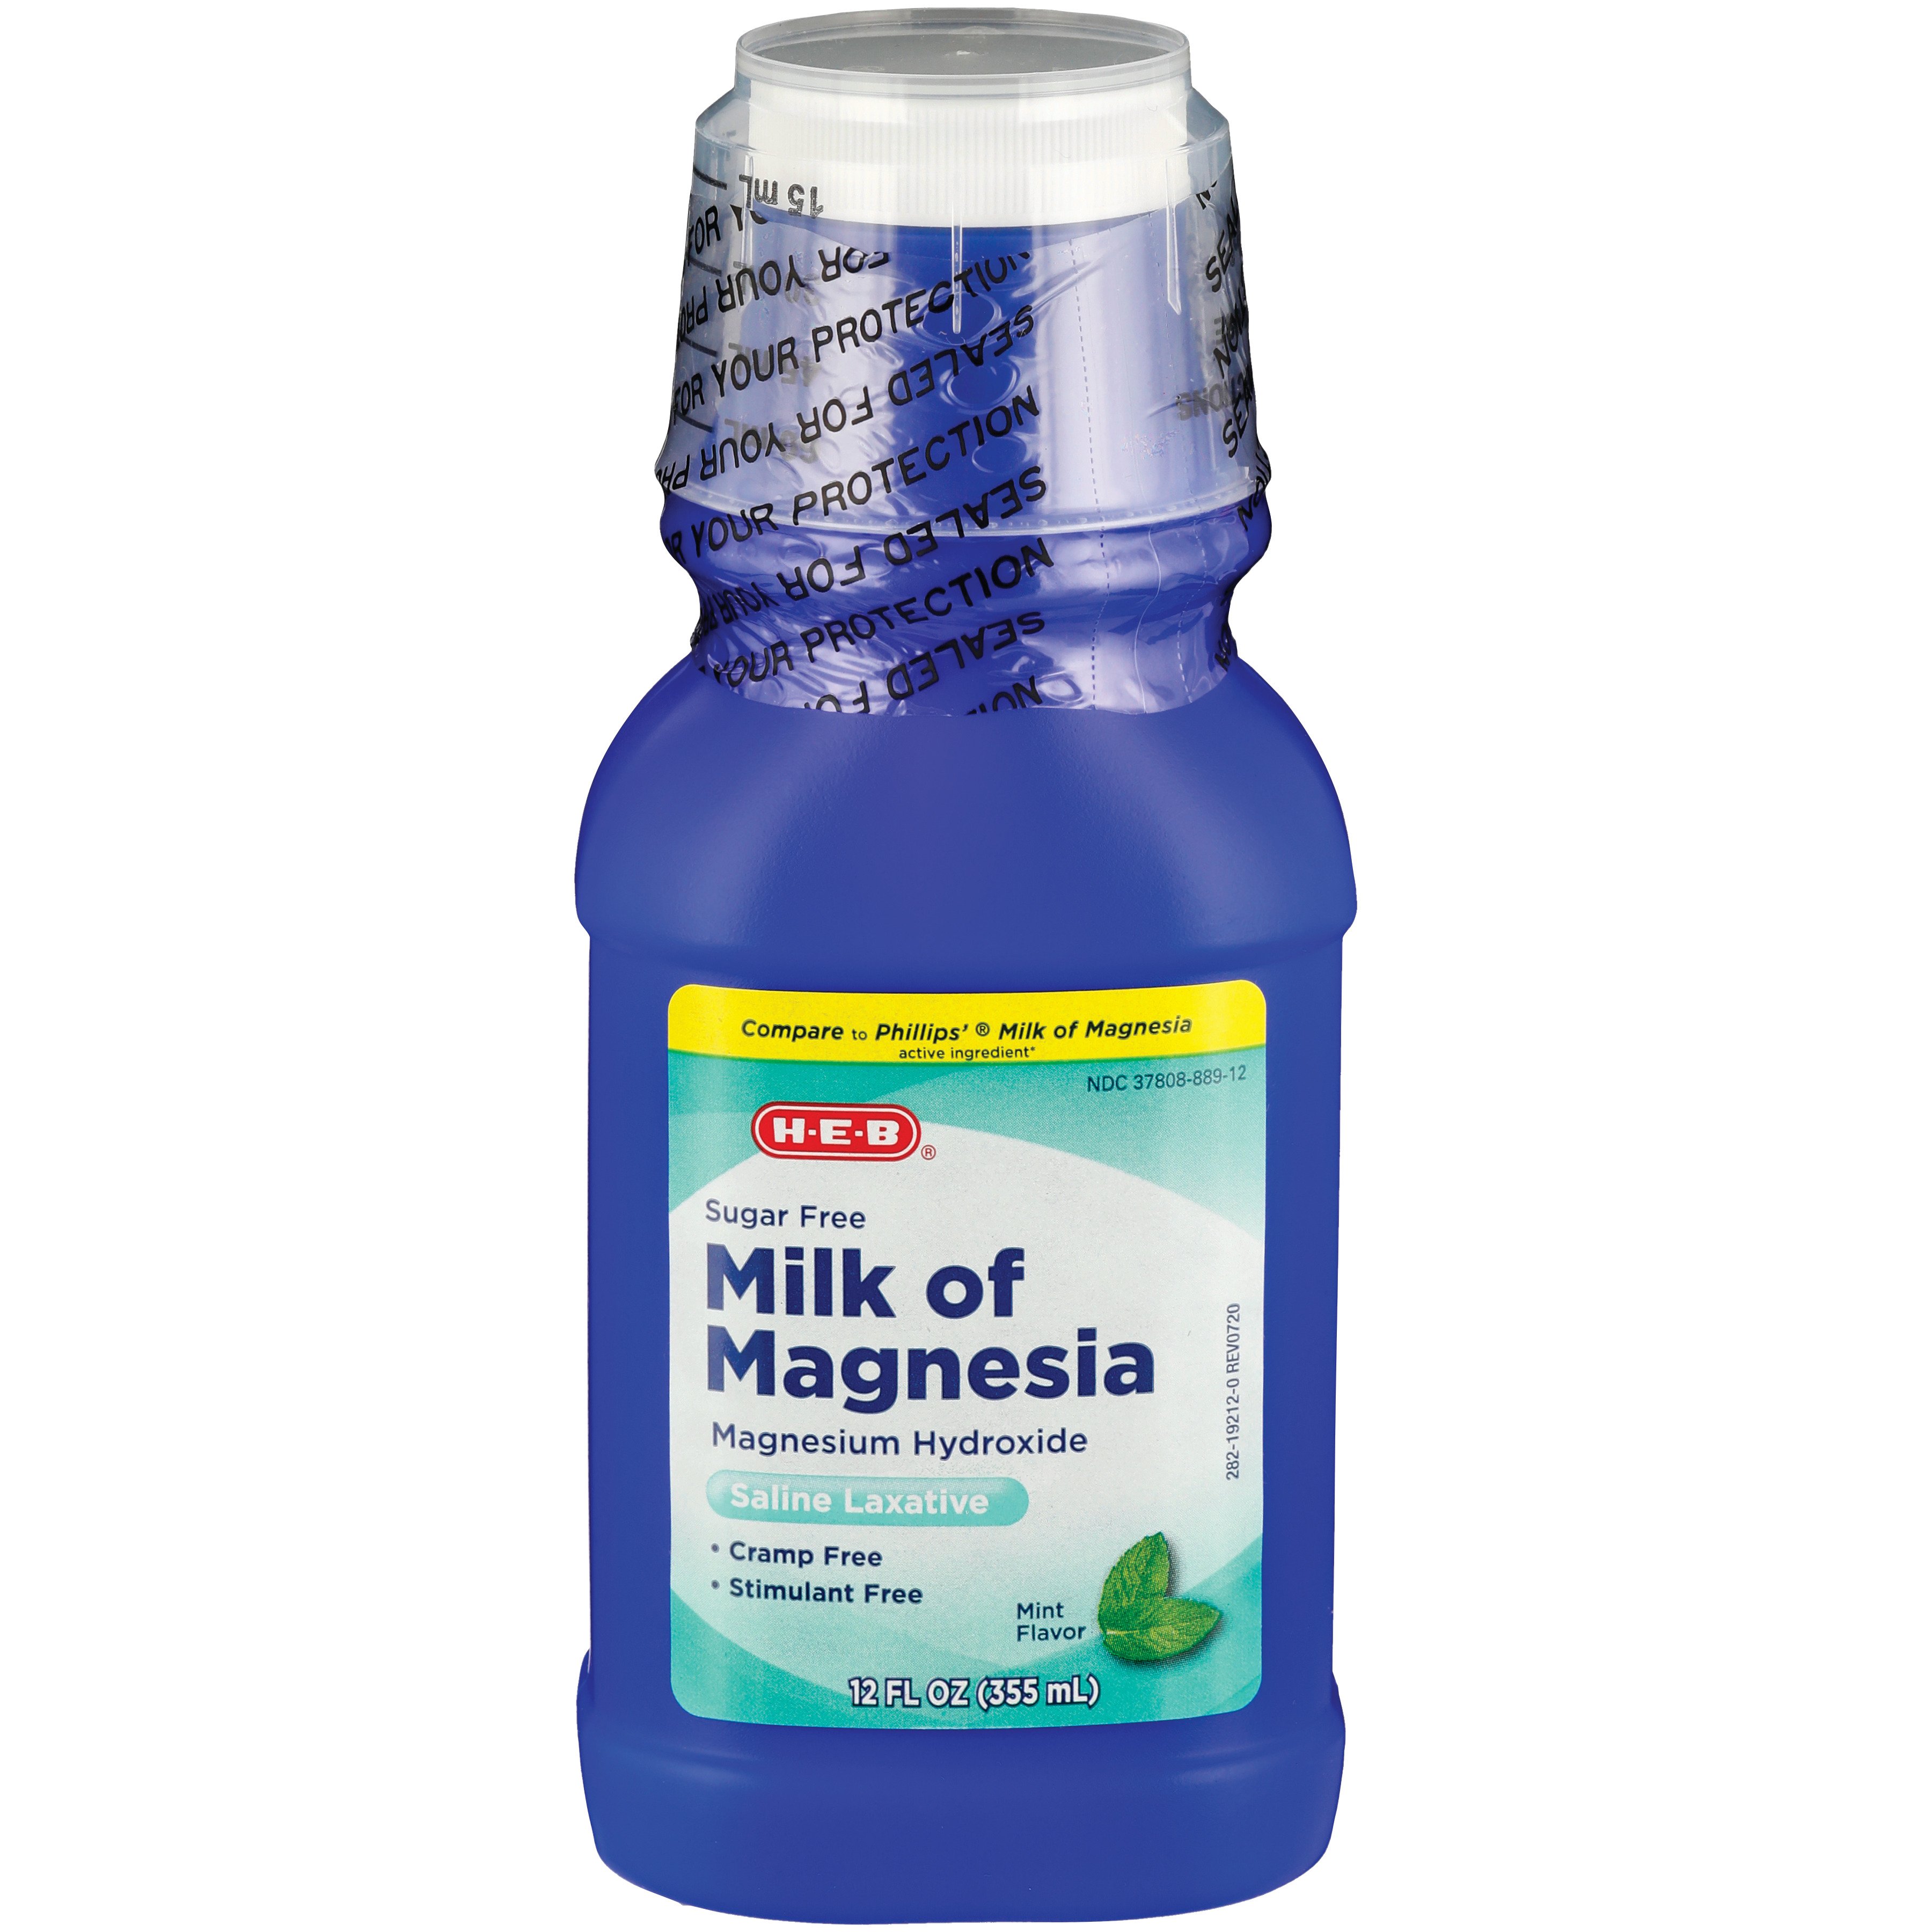 Phillips' milk of magnesia